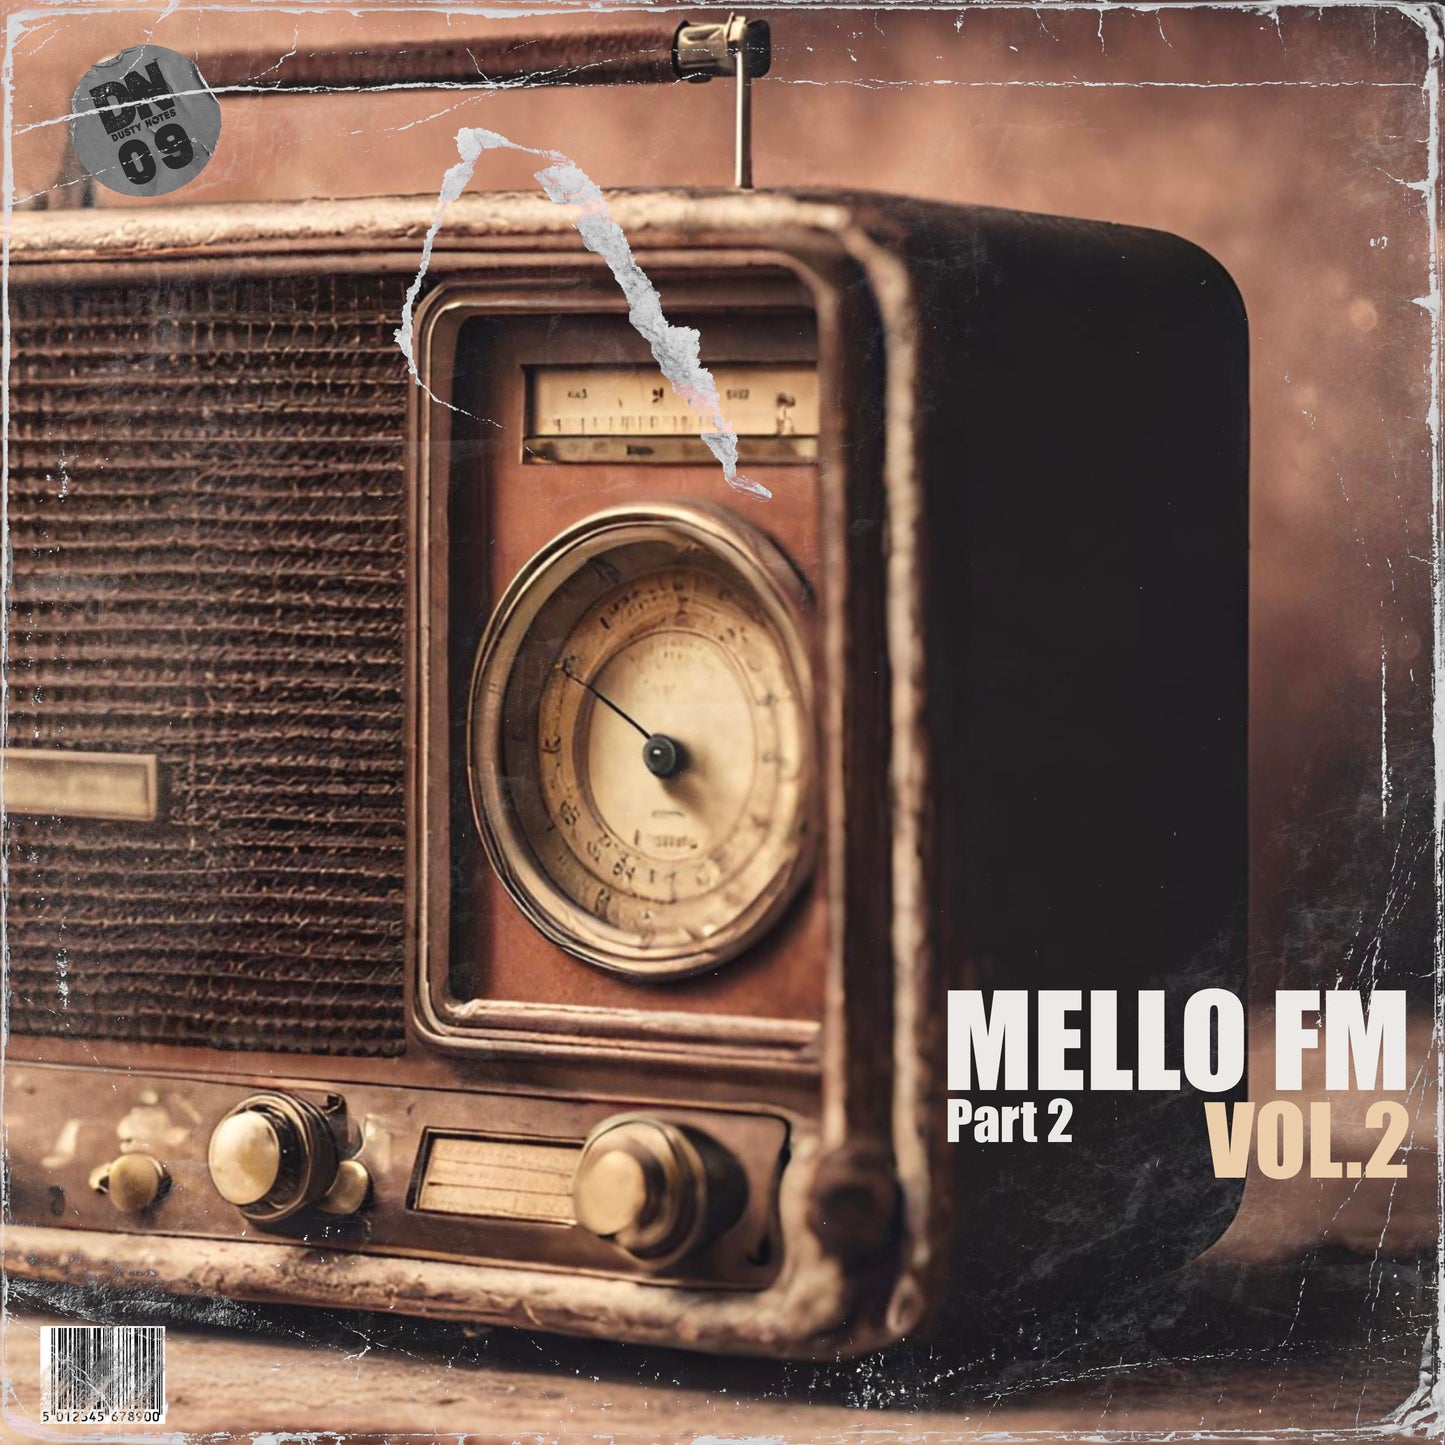 MELLO FM VOL.2 (Part.2)